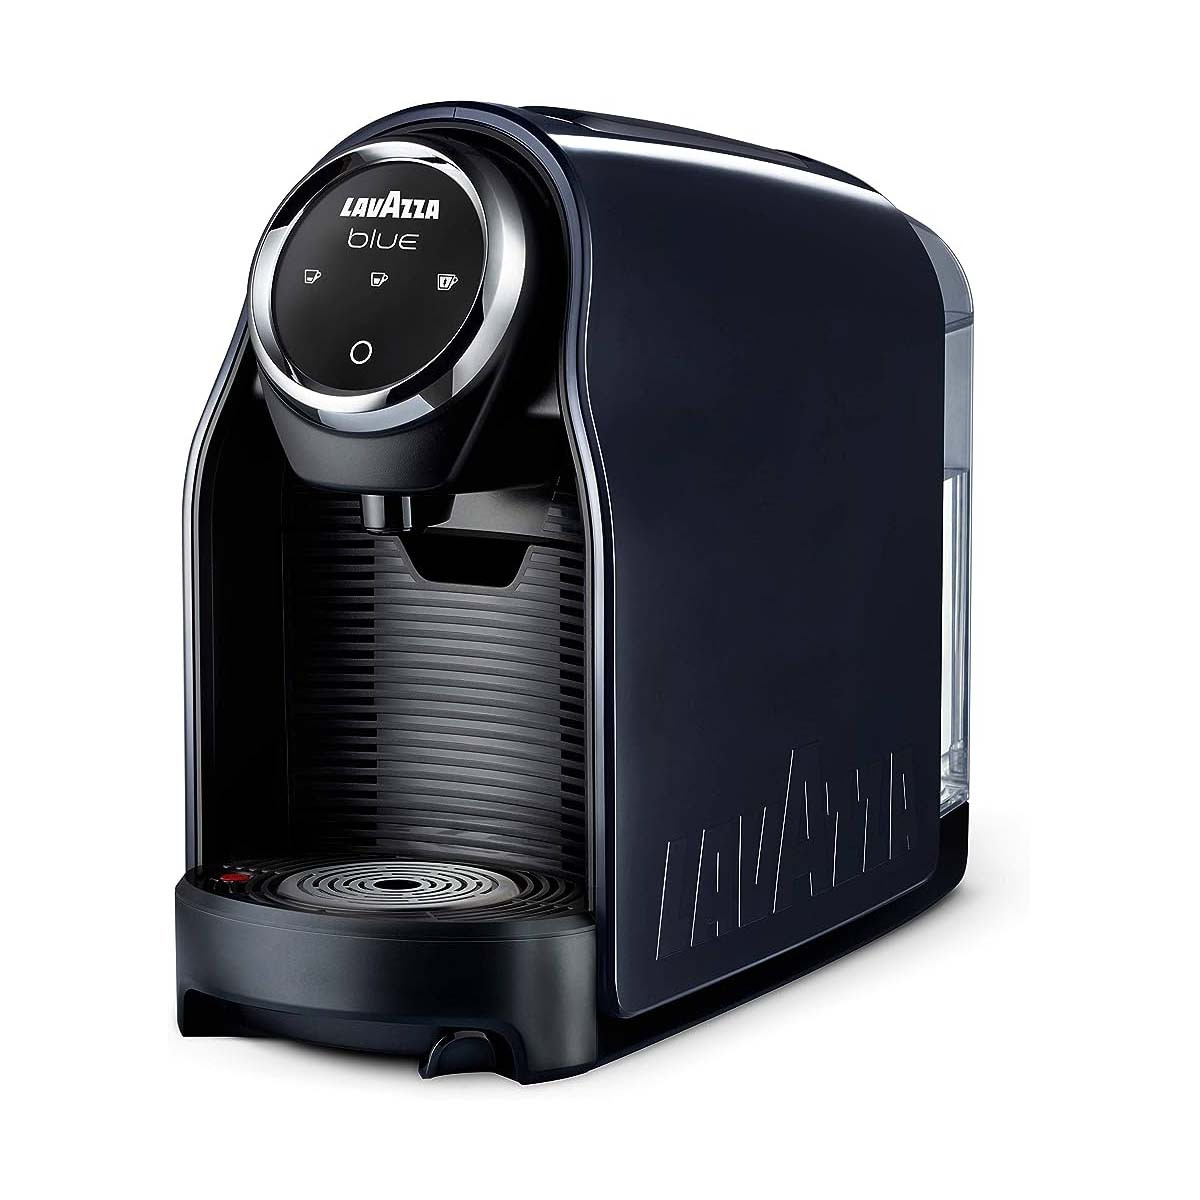 Machine Lavazza Blue LB900 - Coffee-webstore